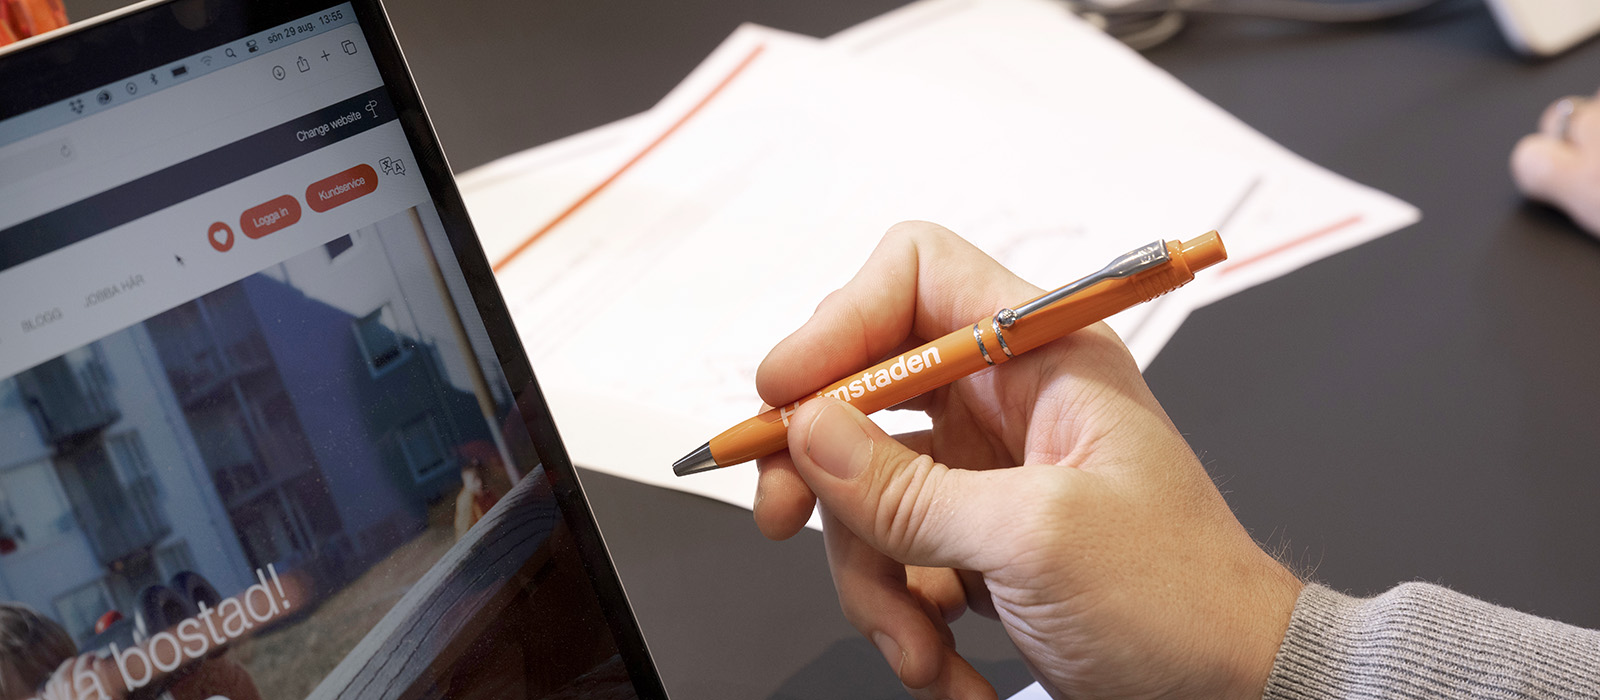 En närbild på en hand som håller i en orange penna. En dator och vita papper ligger på skrivbordet.